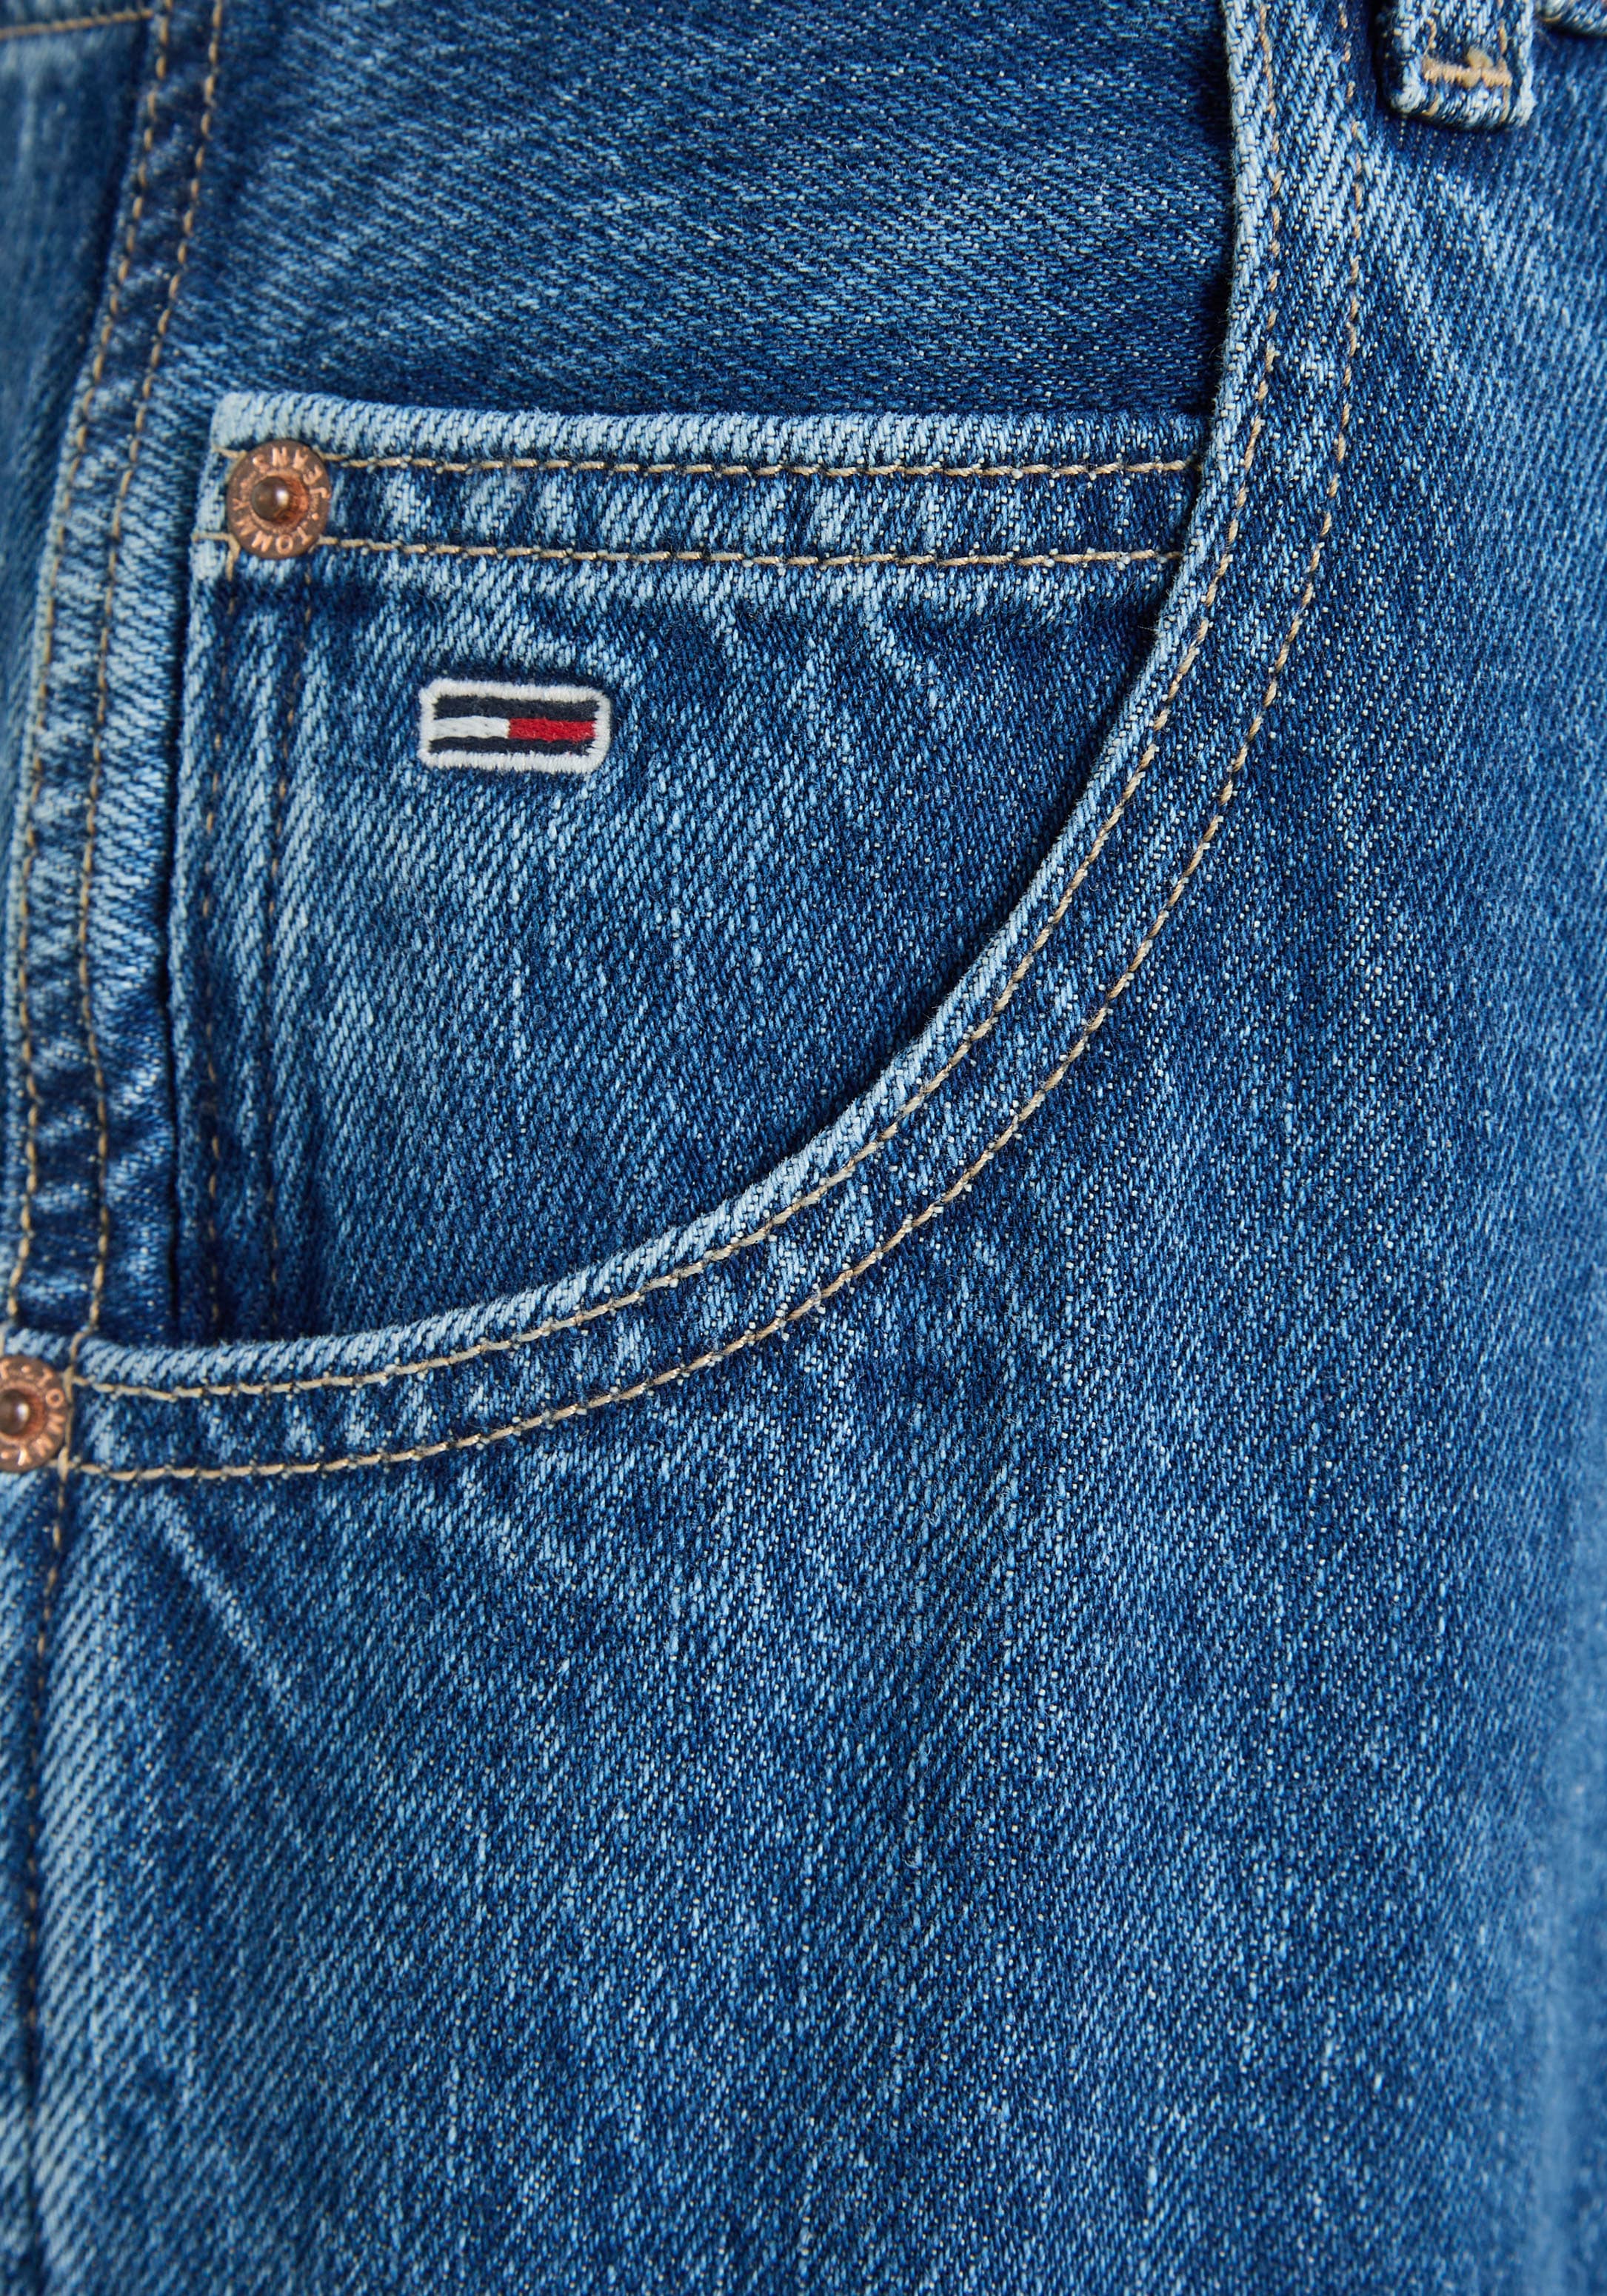 Style ♕ CG4014«, BGY klassischen Jeans LR 5-Pocket- Weite bei »DAISY Jeans JEAN im Tommy